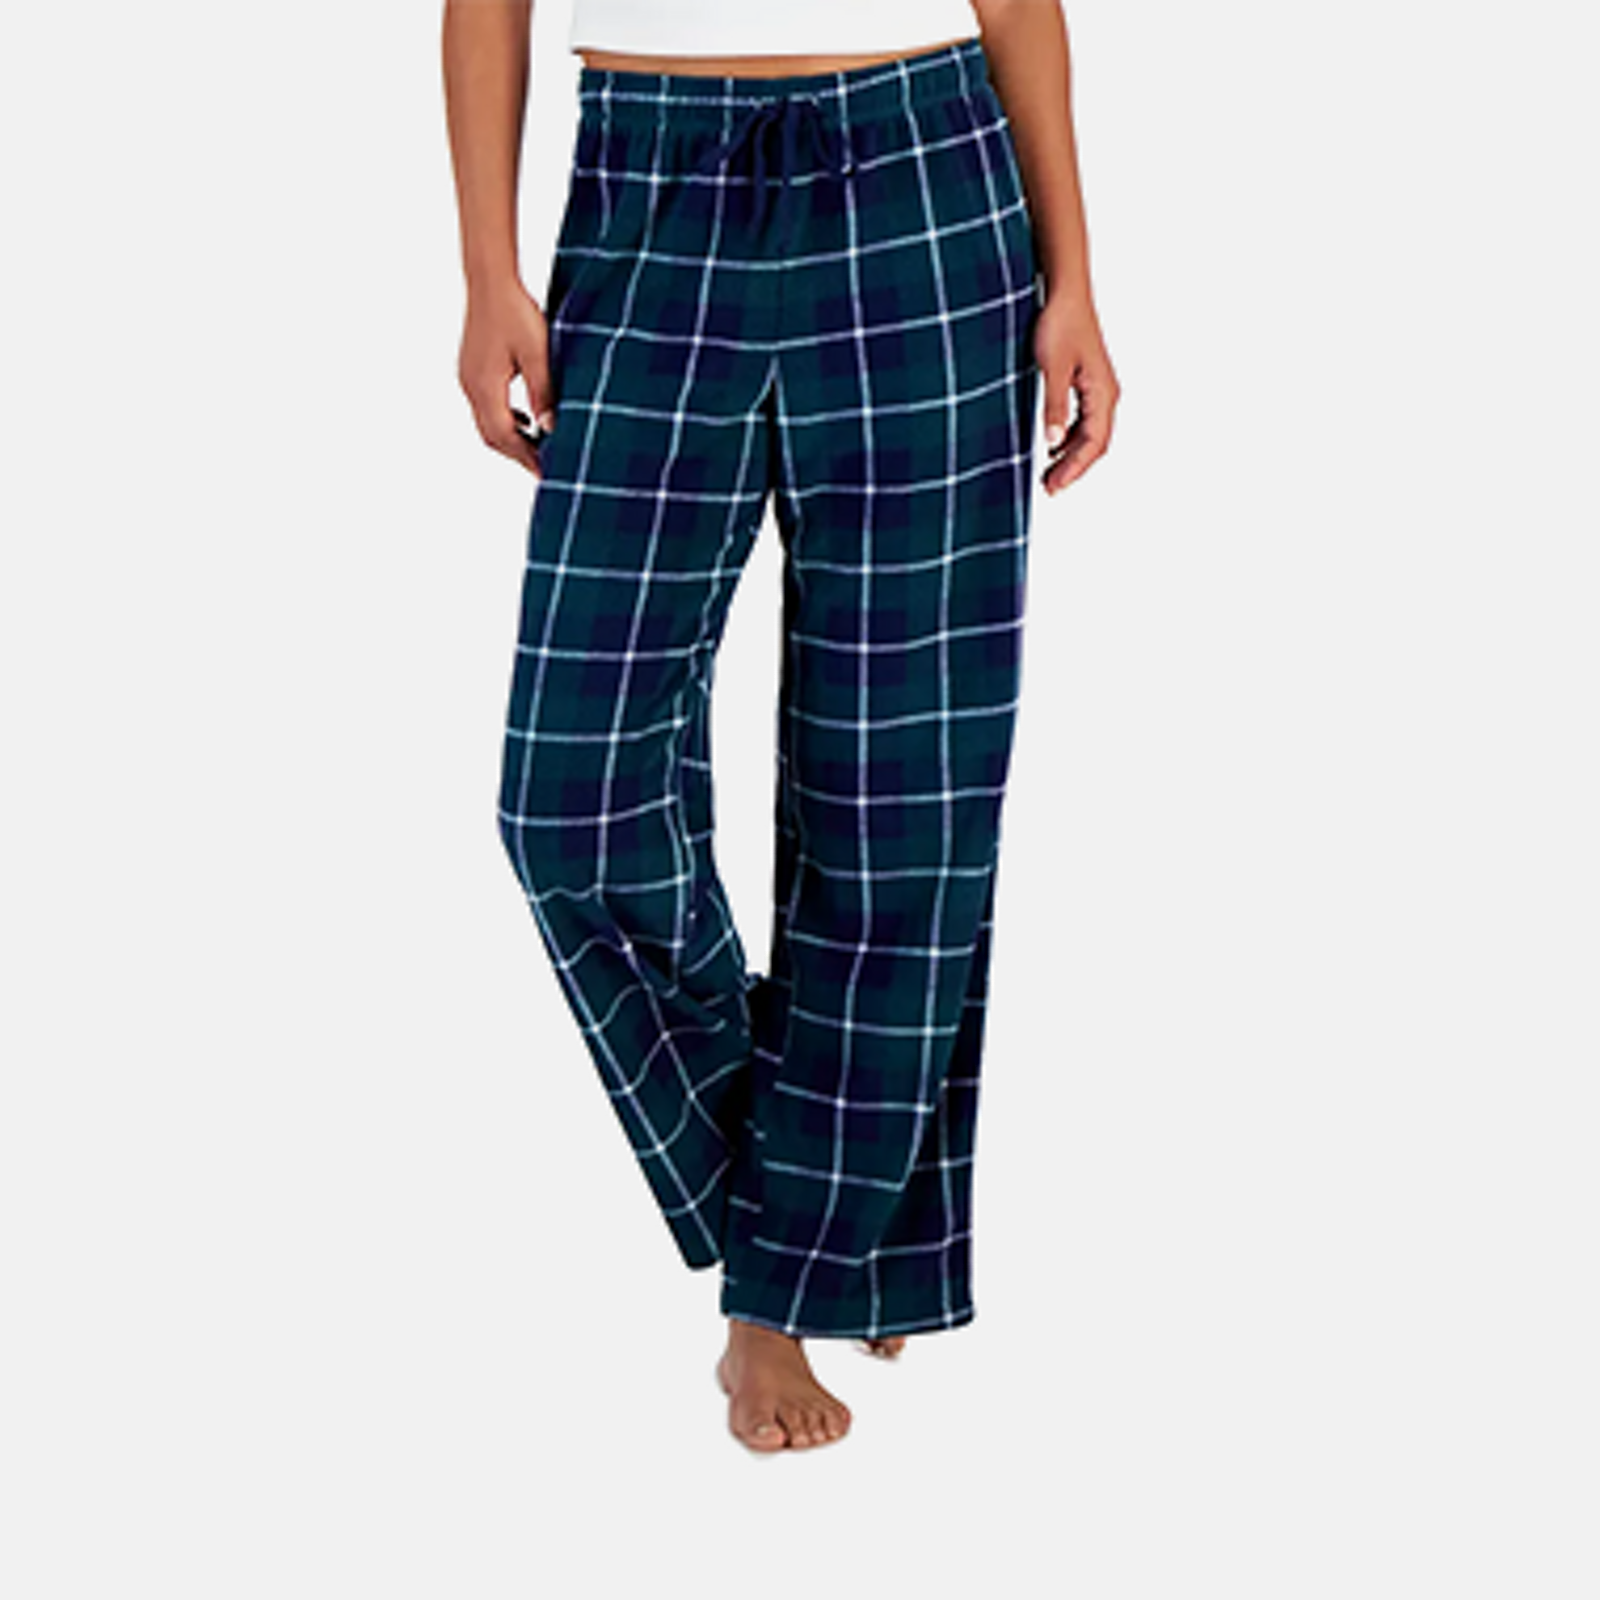 Honeydew Loungewear Women's Pajamas & Women's Robes - Macy's